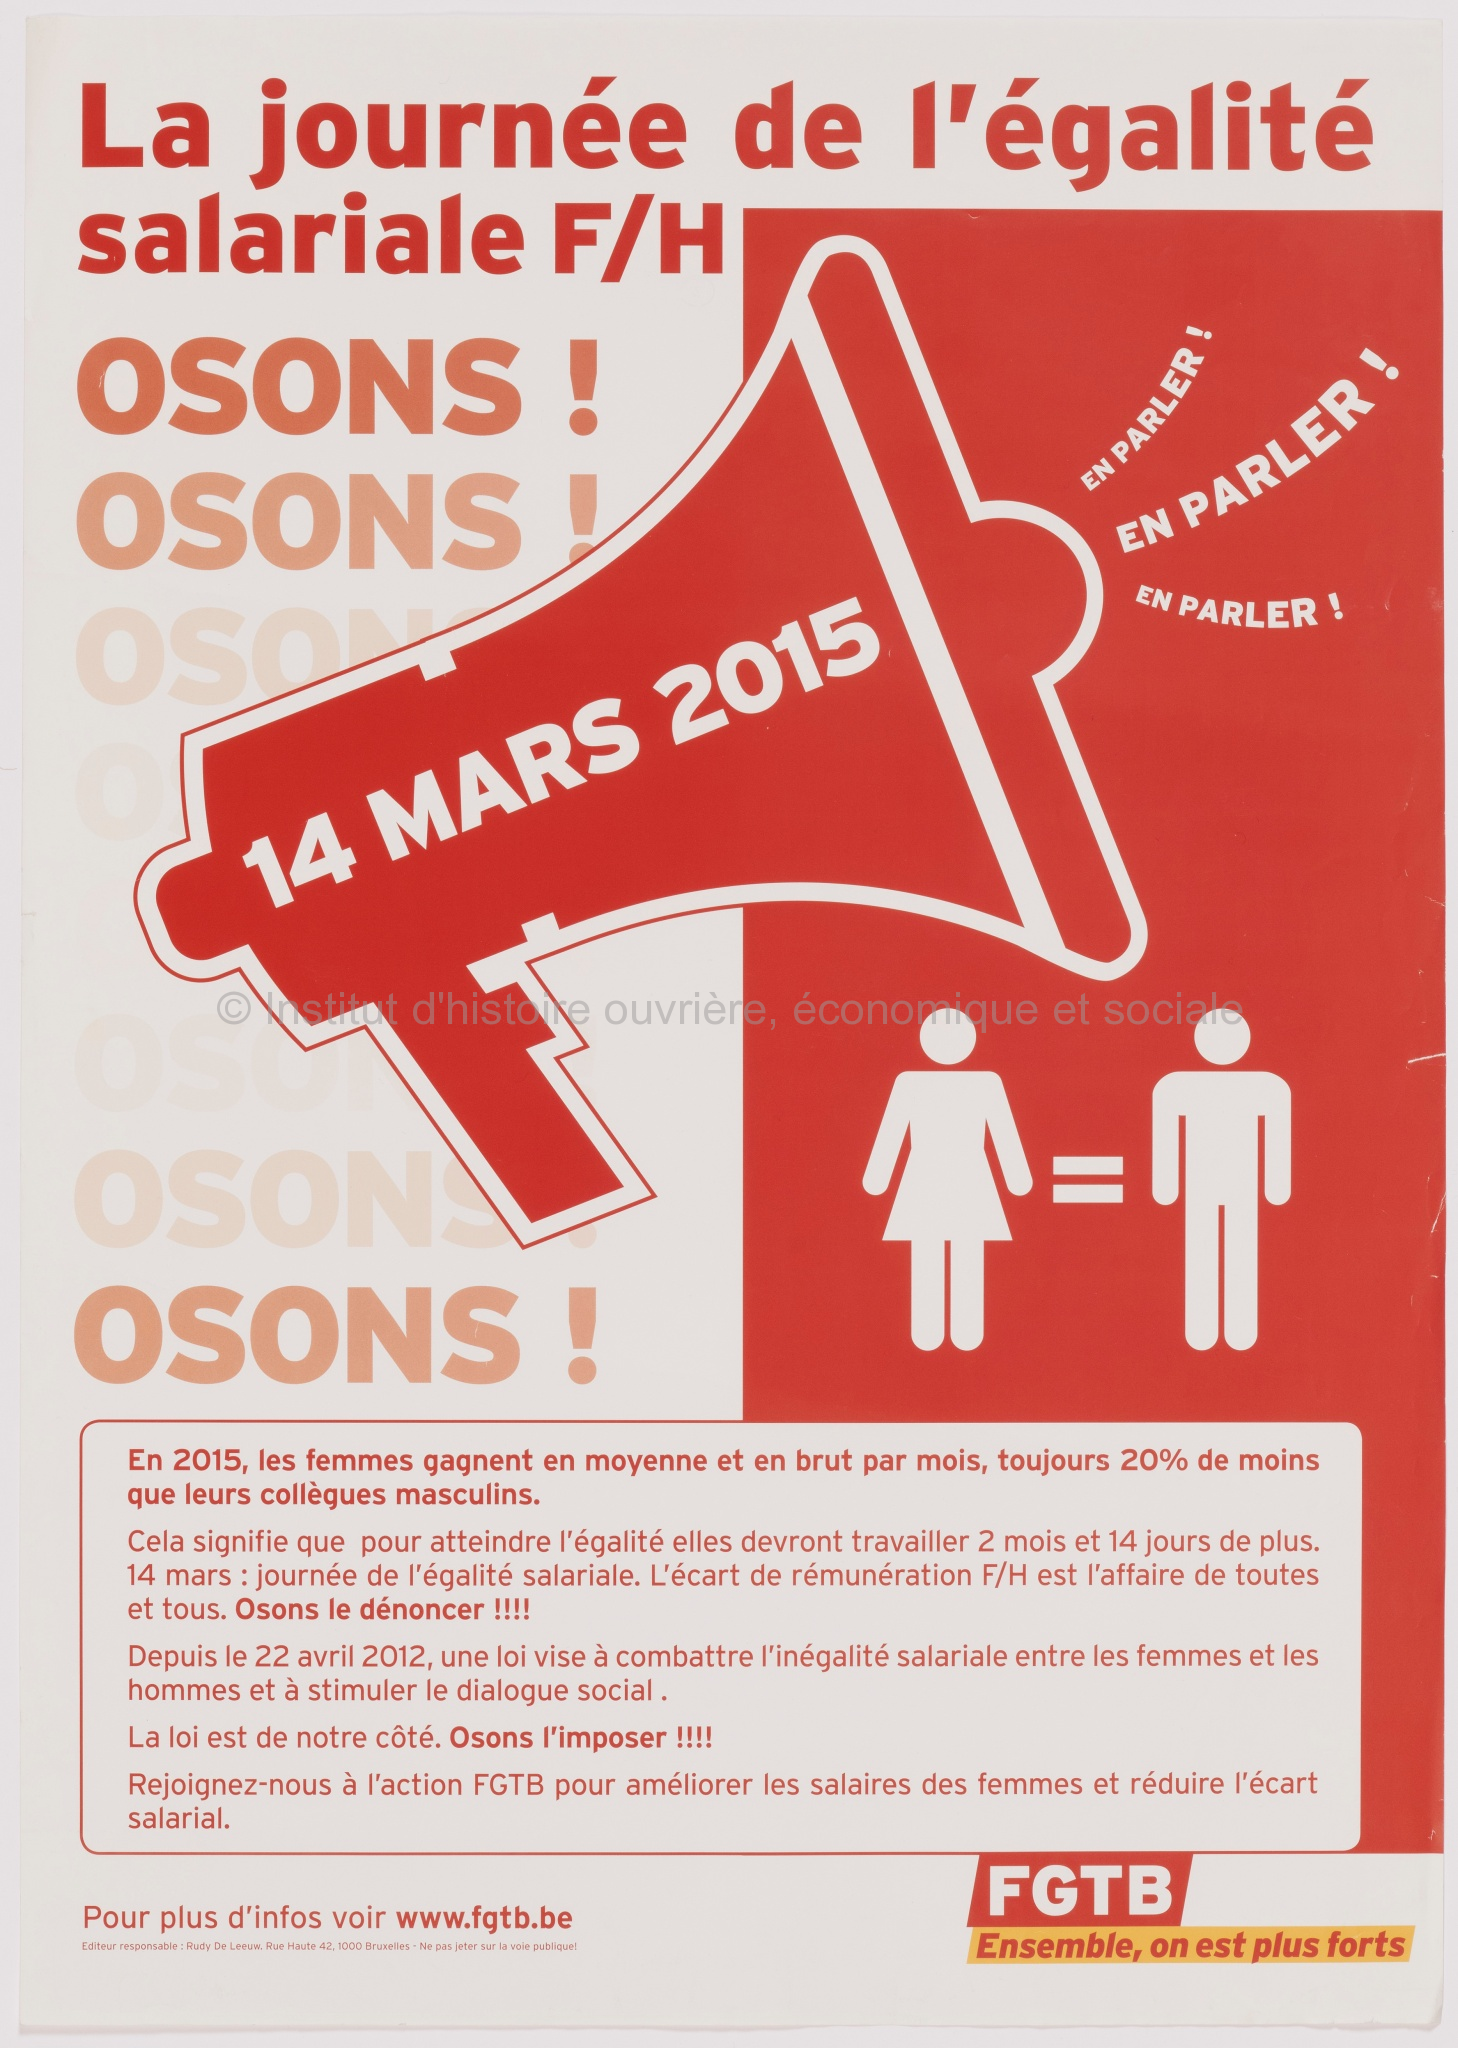 La journée de l'égalité salariale F/H. Osons ! En parler. Osons ! En parler. Osons ! En parler. 14 mars 2015